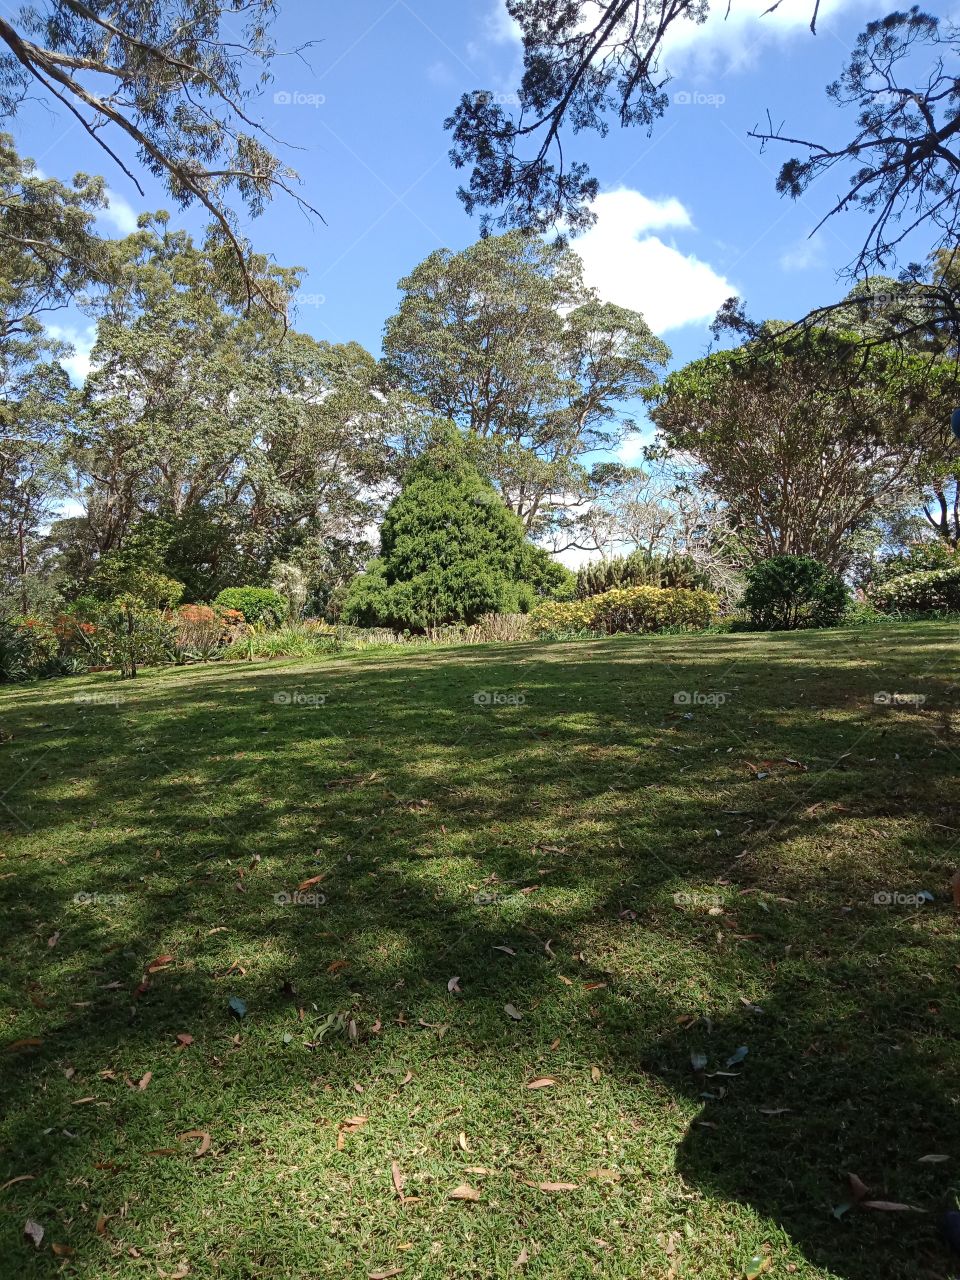 a large landscaped park or garden